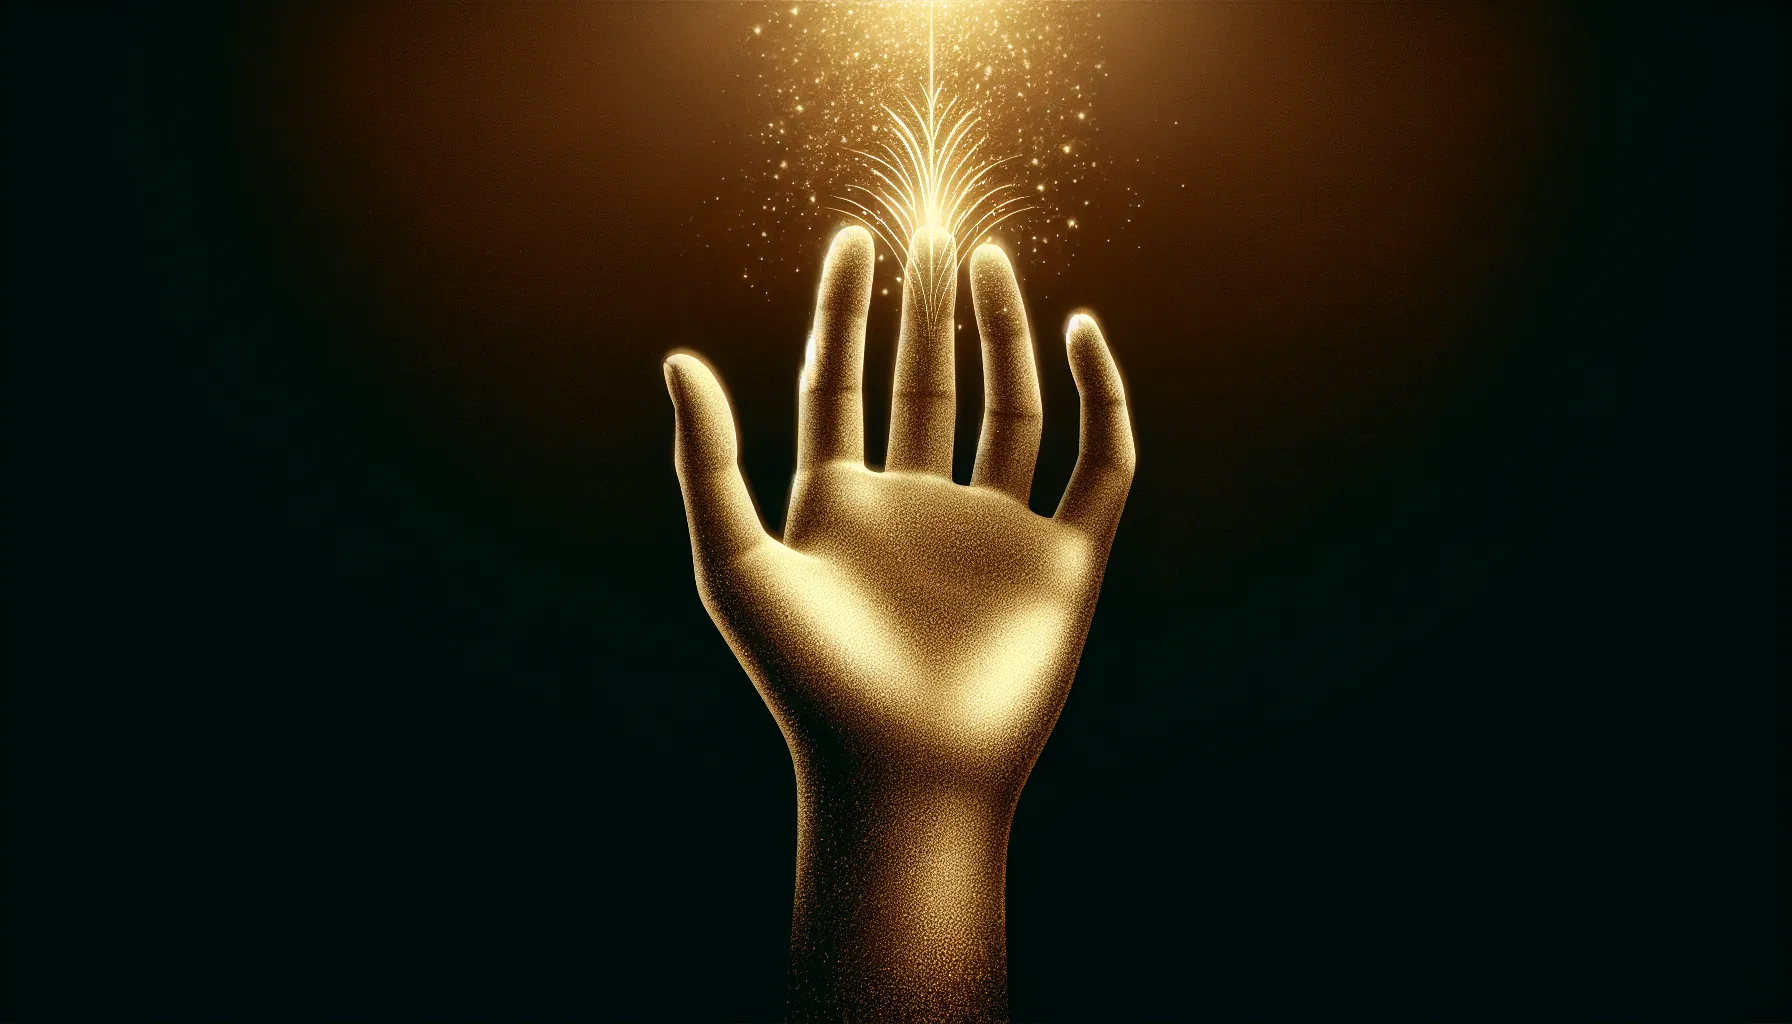 Imagen ilustrativa de una mano levantada en señal de consagración, con una suave luz dorada resplandeciendo sobre ella, representando el significado y la importancia de la consagración en la Biblia.